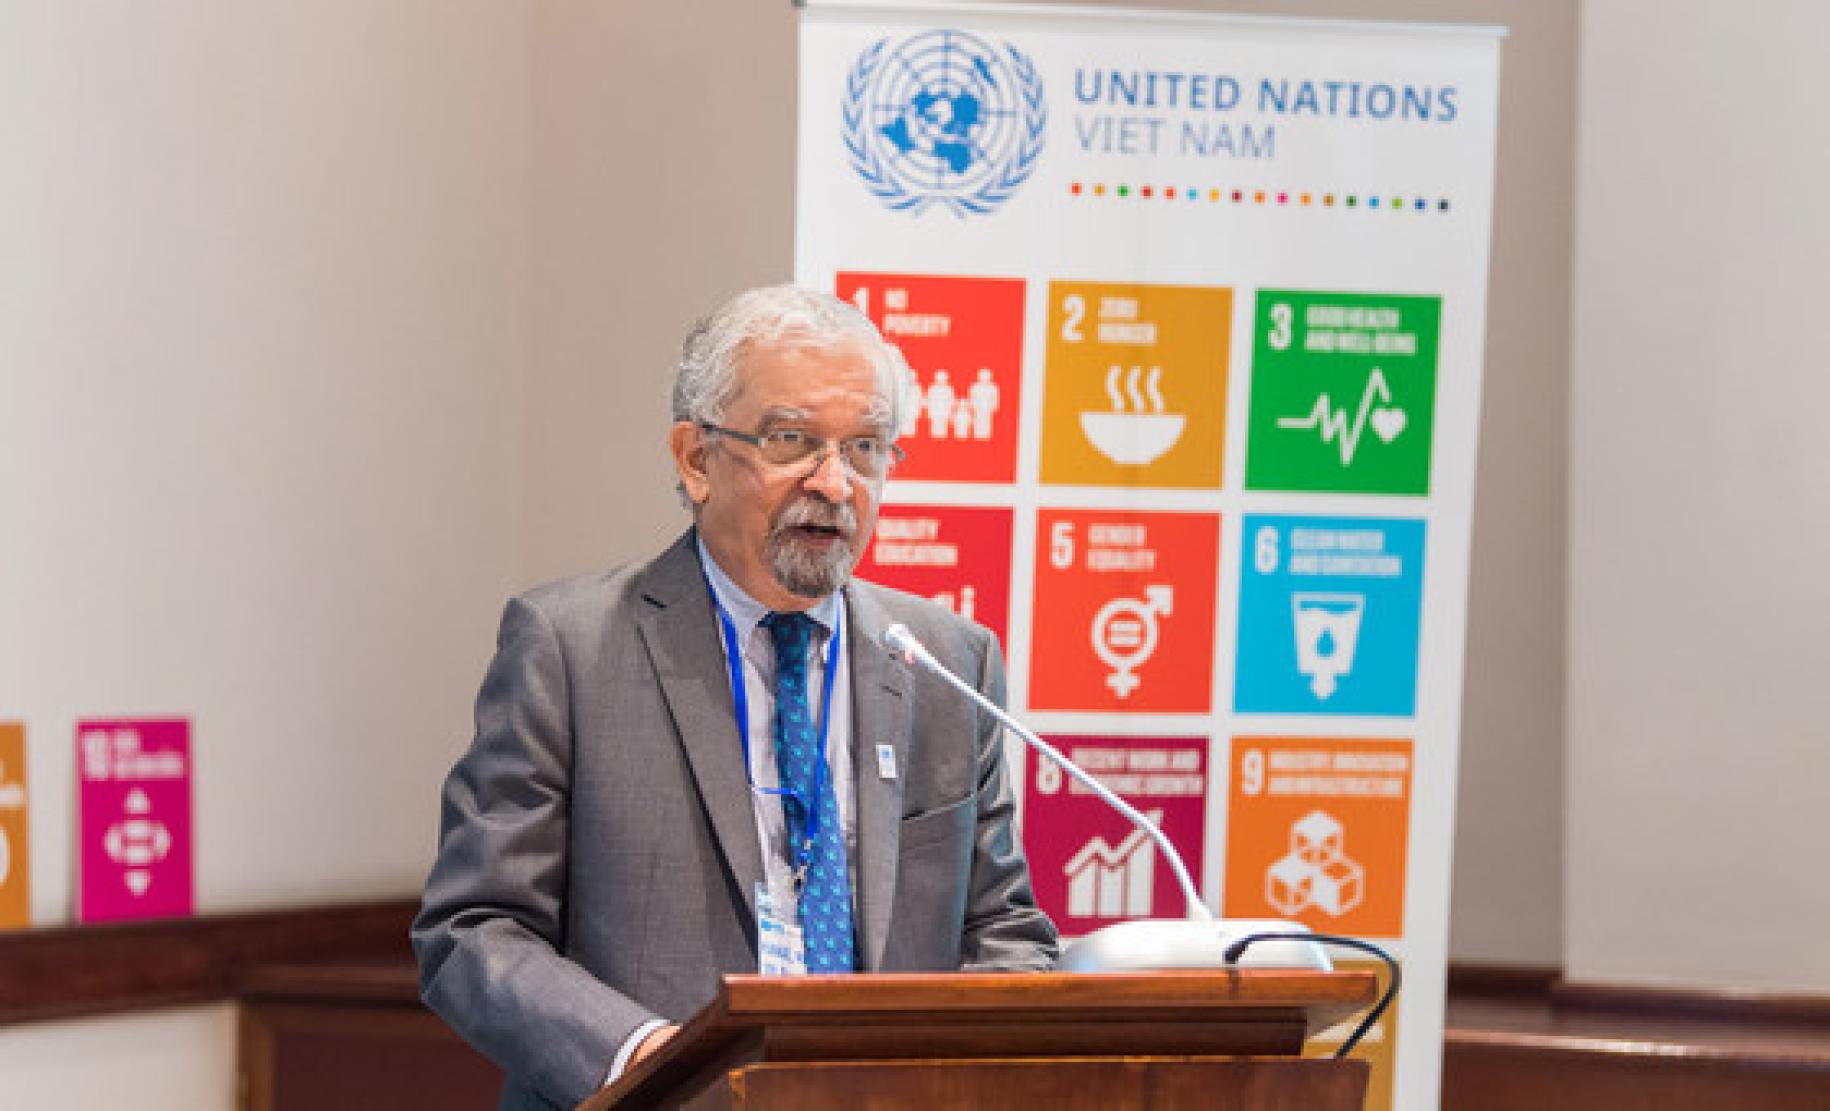 Kamal Malhotra, el Coordinador Residente de las Naciones Unidas en Vietnam, habla en un podio.